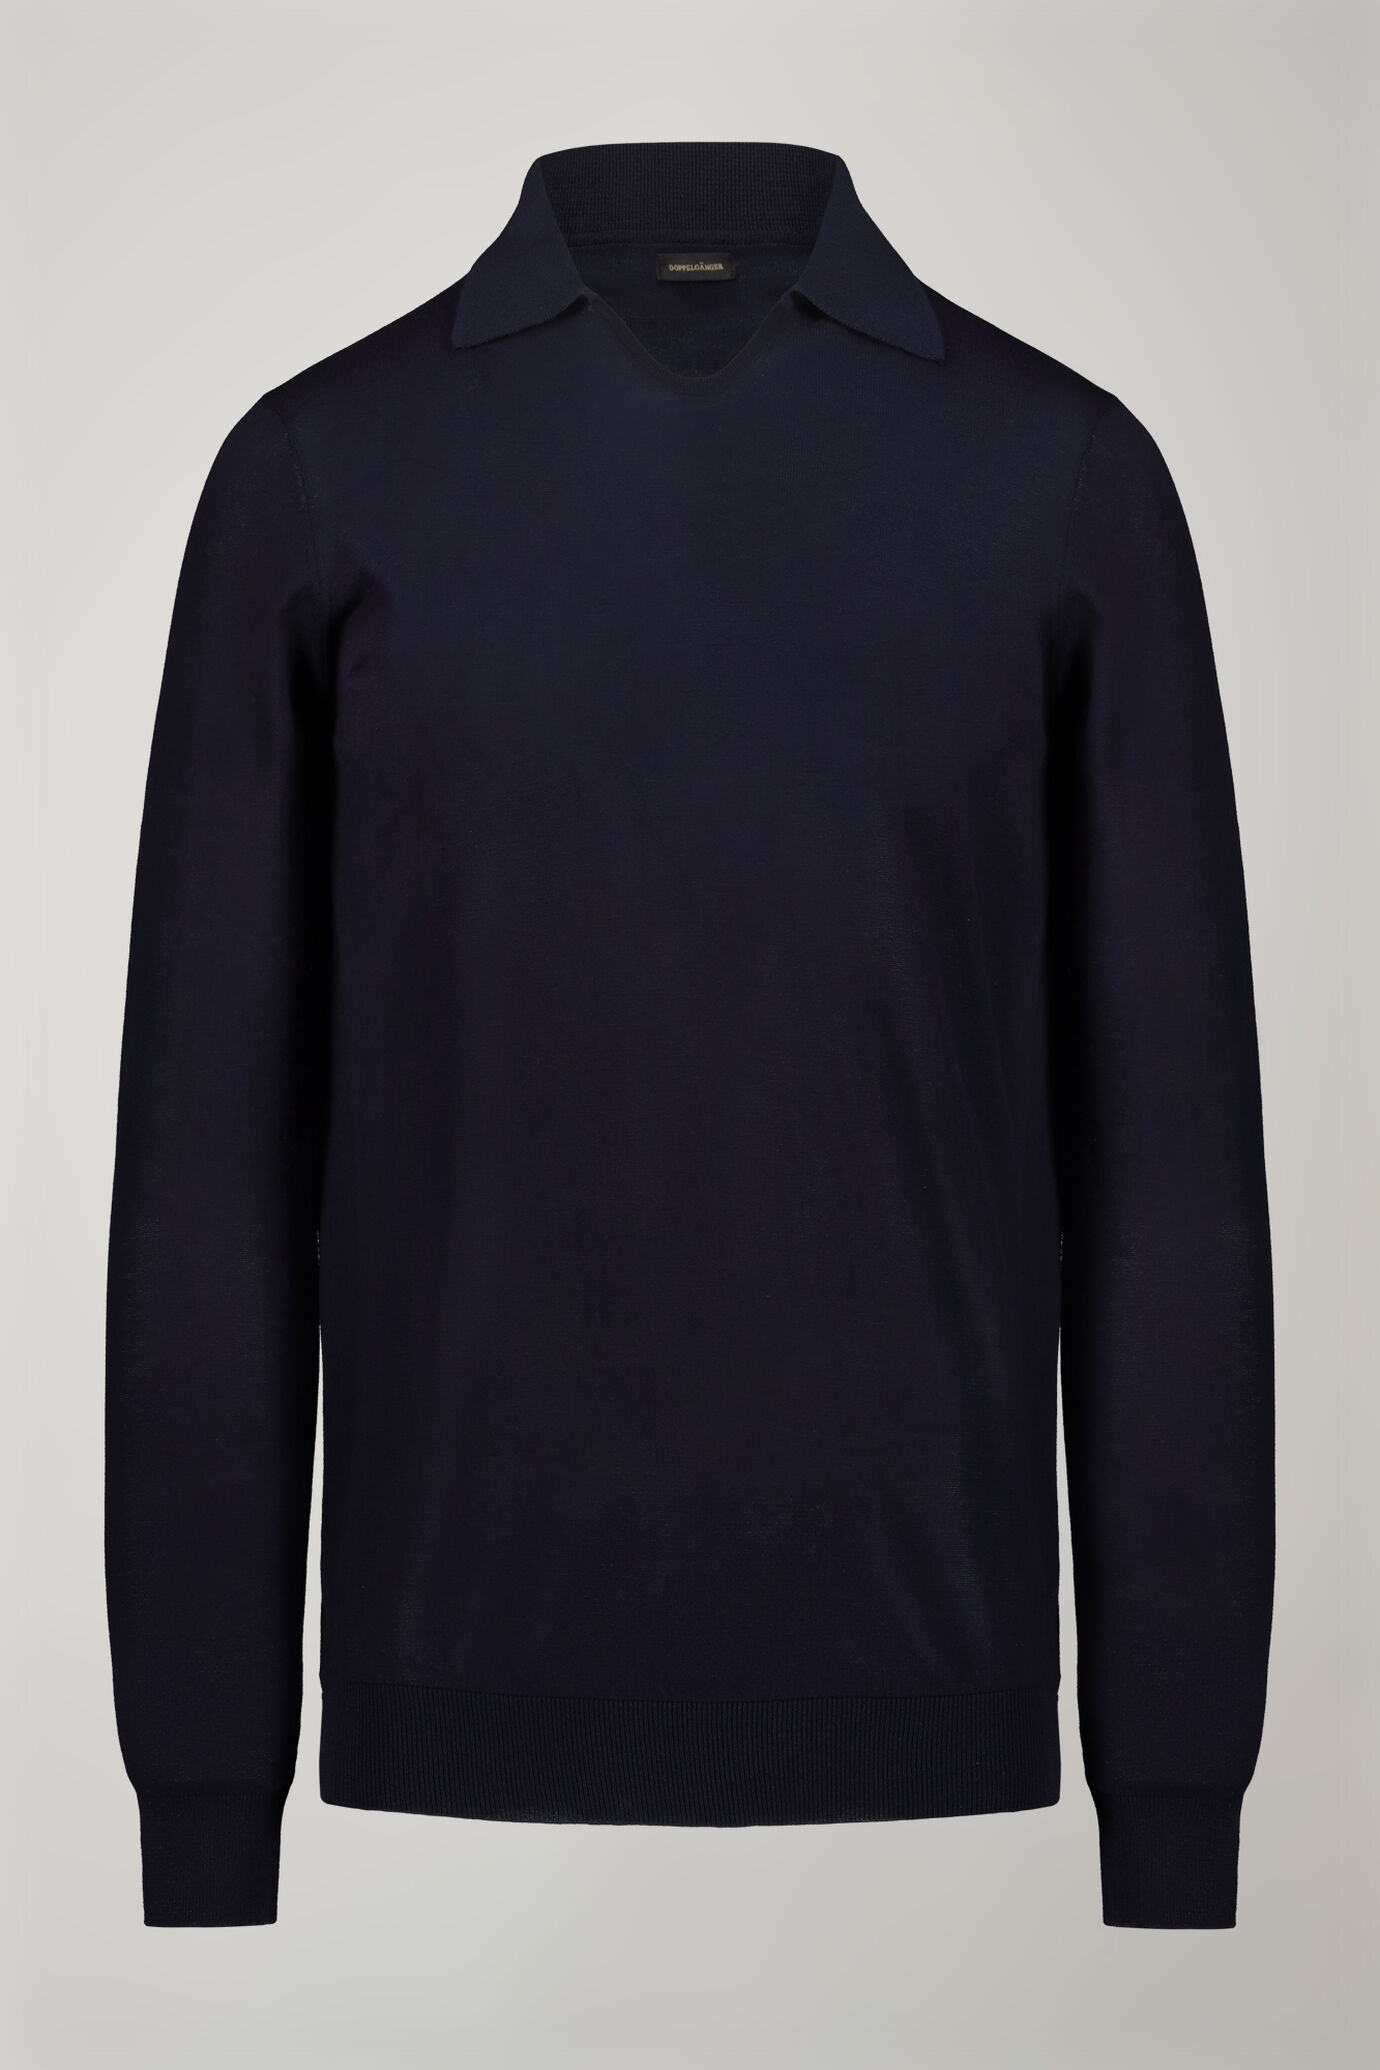 Herren-Poloshirt mit V-Ausschnitt aus 100 % Baumwollstrick und langen Ärmeln in normaler Passform image number 6